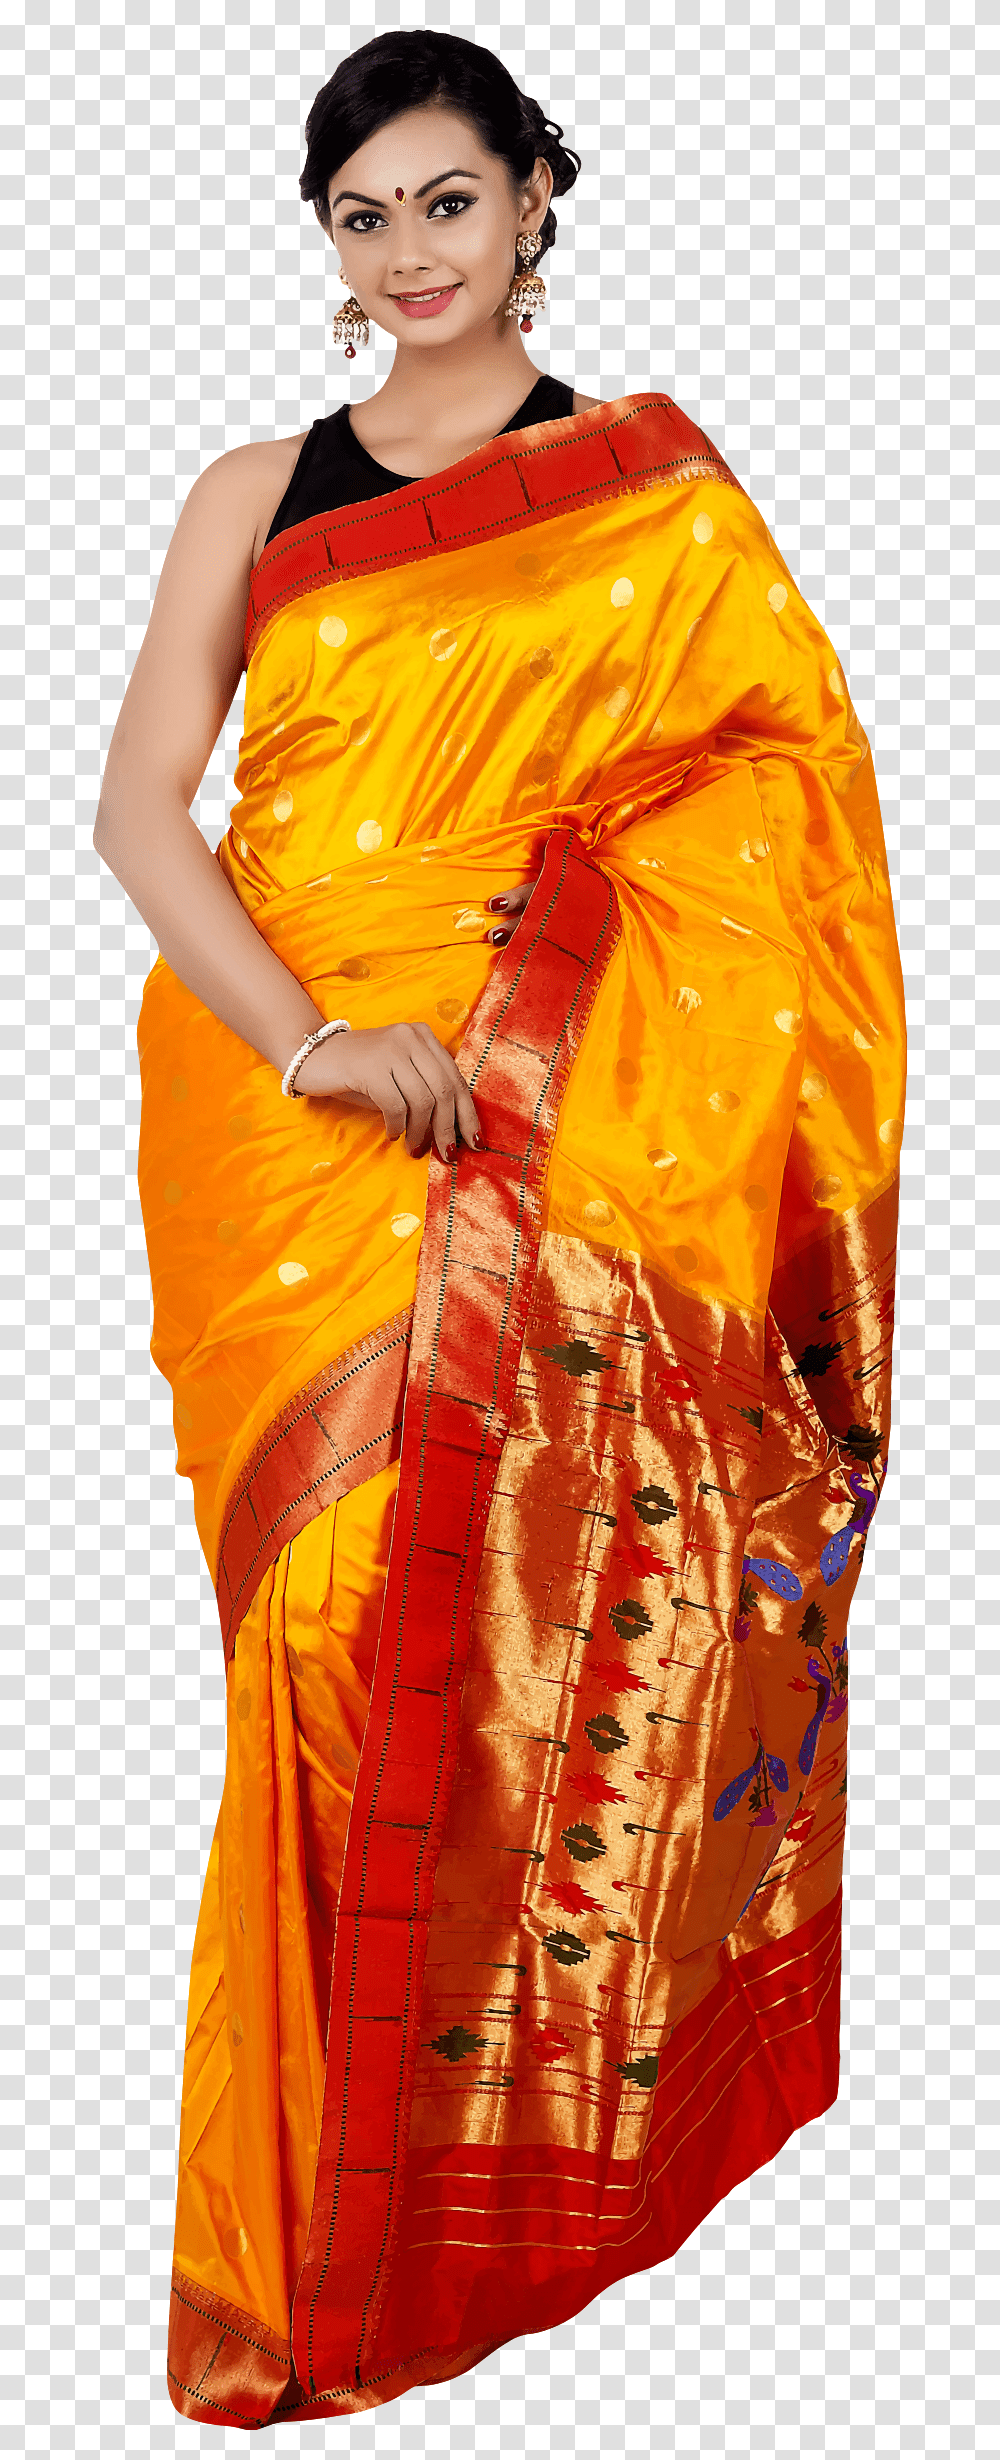 Woman In Saree 5 Clip Arts Woman With Saree, Apparel, Sari, Silk Transparent Png